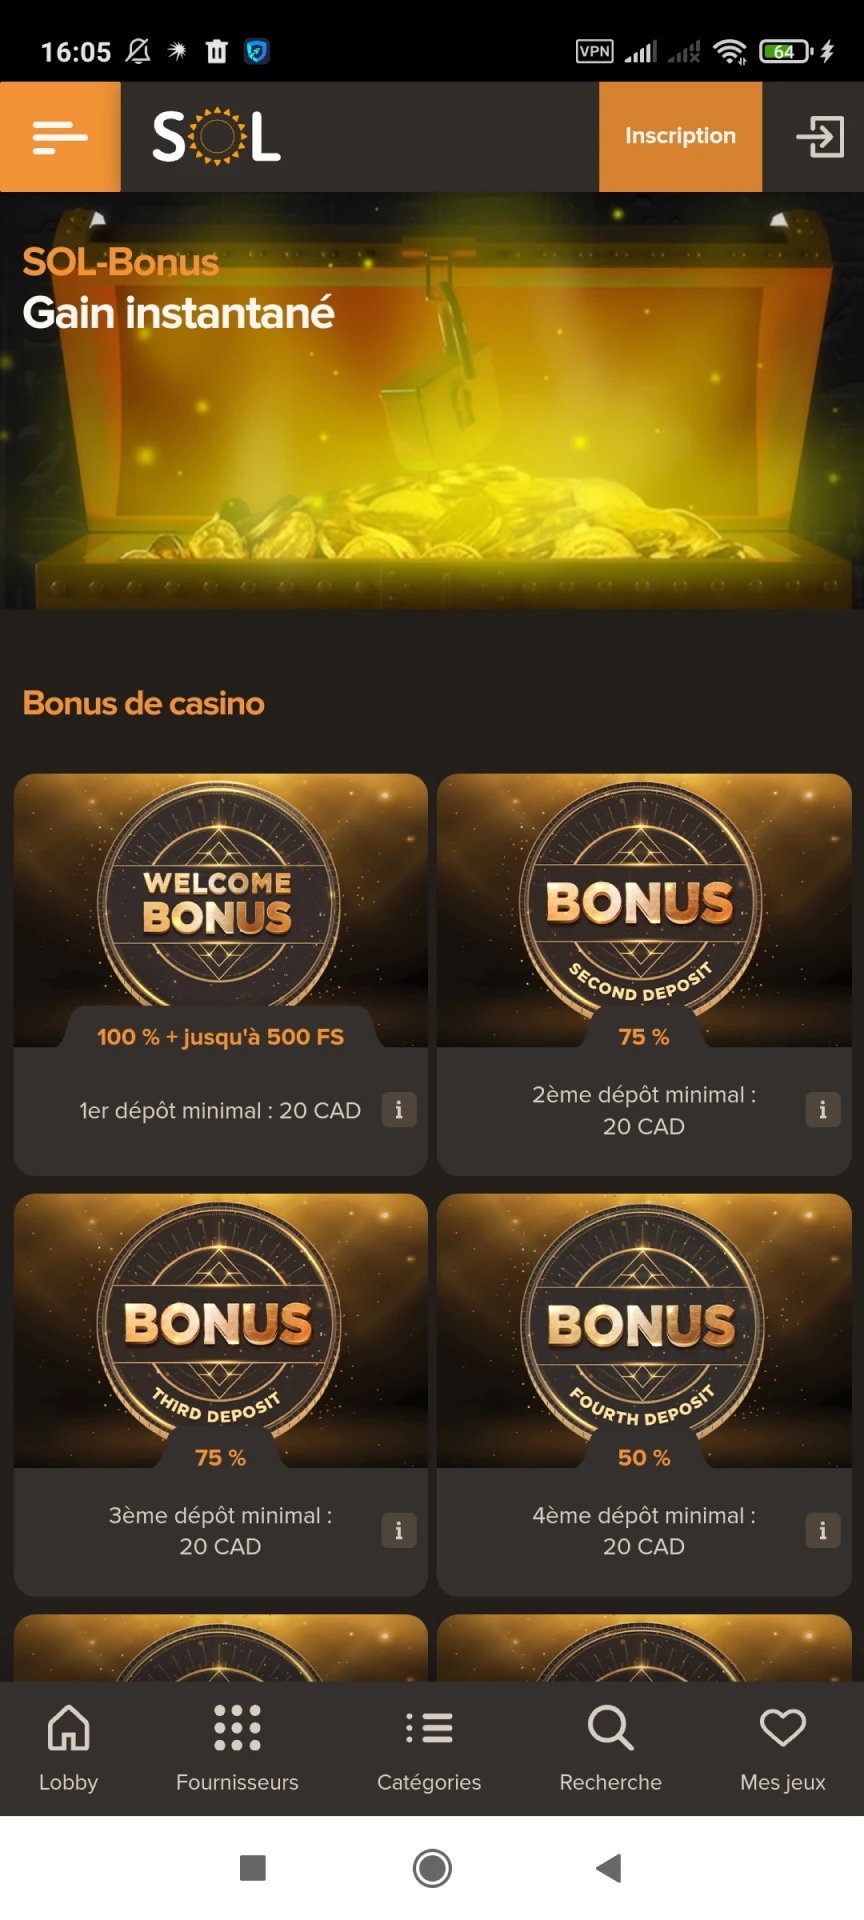 Visitez la page des bonus de l'application Sol Casino.